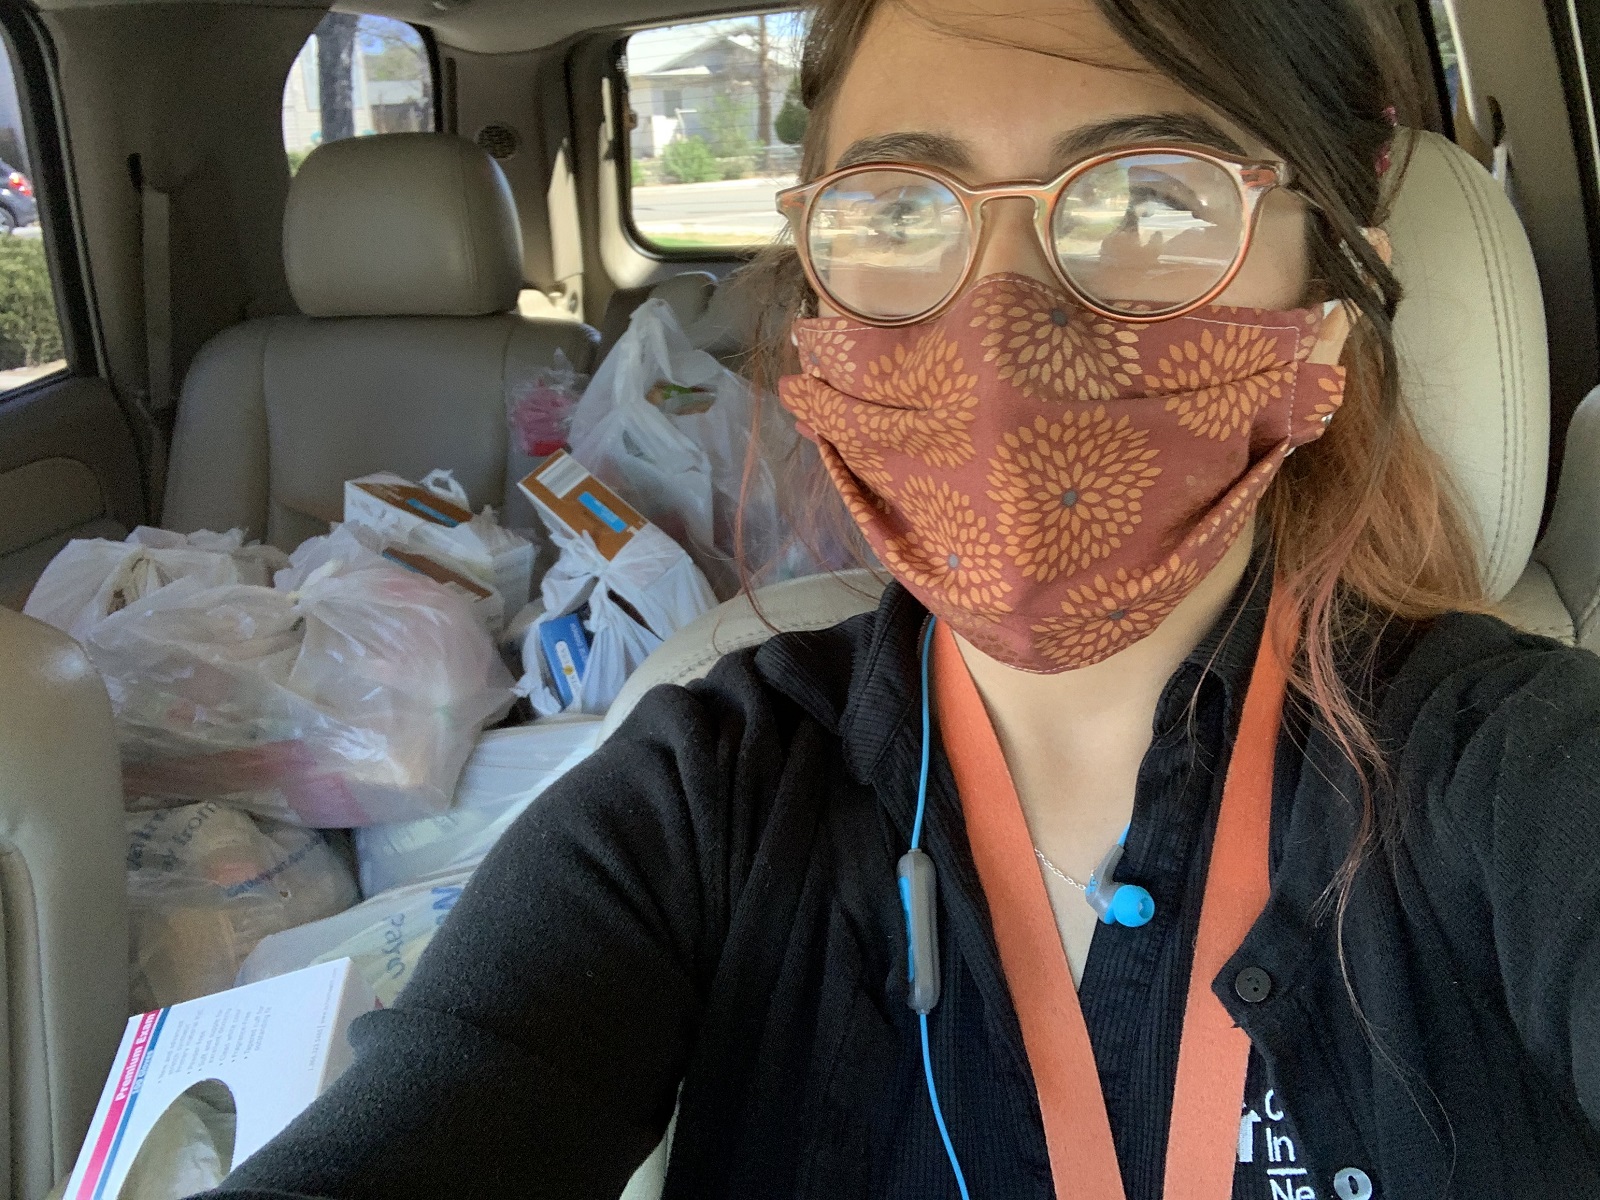 Carolina Juárez dirige la despensa de alimentos de la escuela primaria Glenn Duncan. Por la pandemia, comenzó a llevar alimentos a los hogares de las familias que necesitan ayuda. Esta selfie muestra a Juárez en su coche, con tapabocas, y las bolsas de comida atrás.